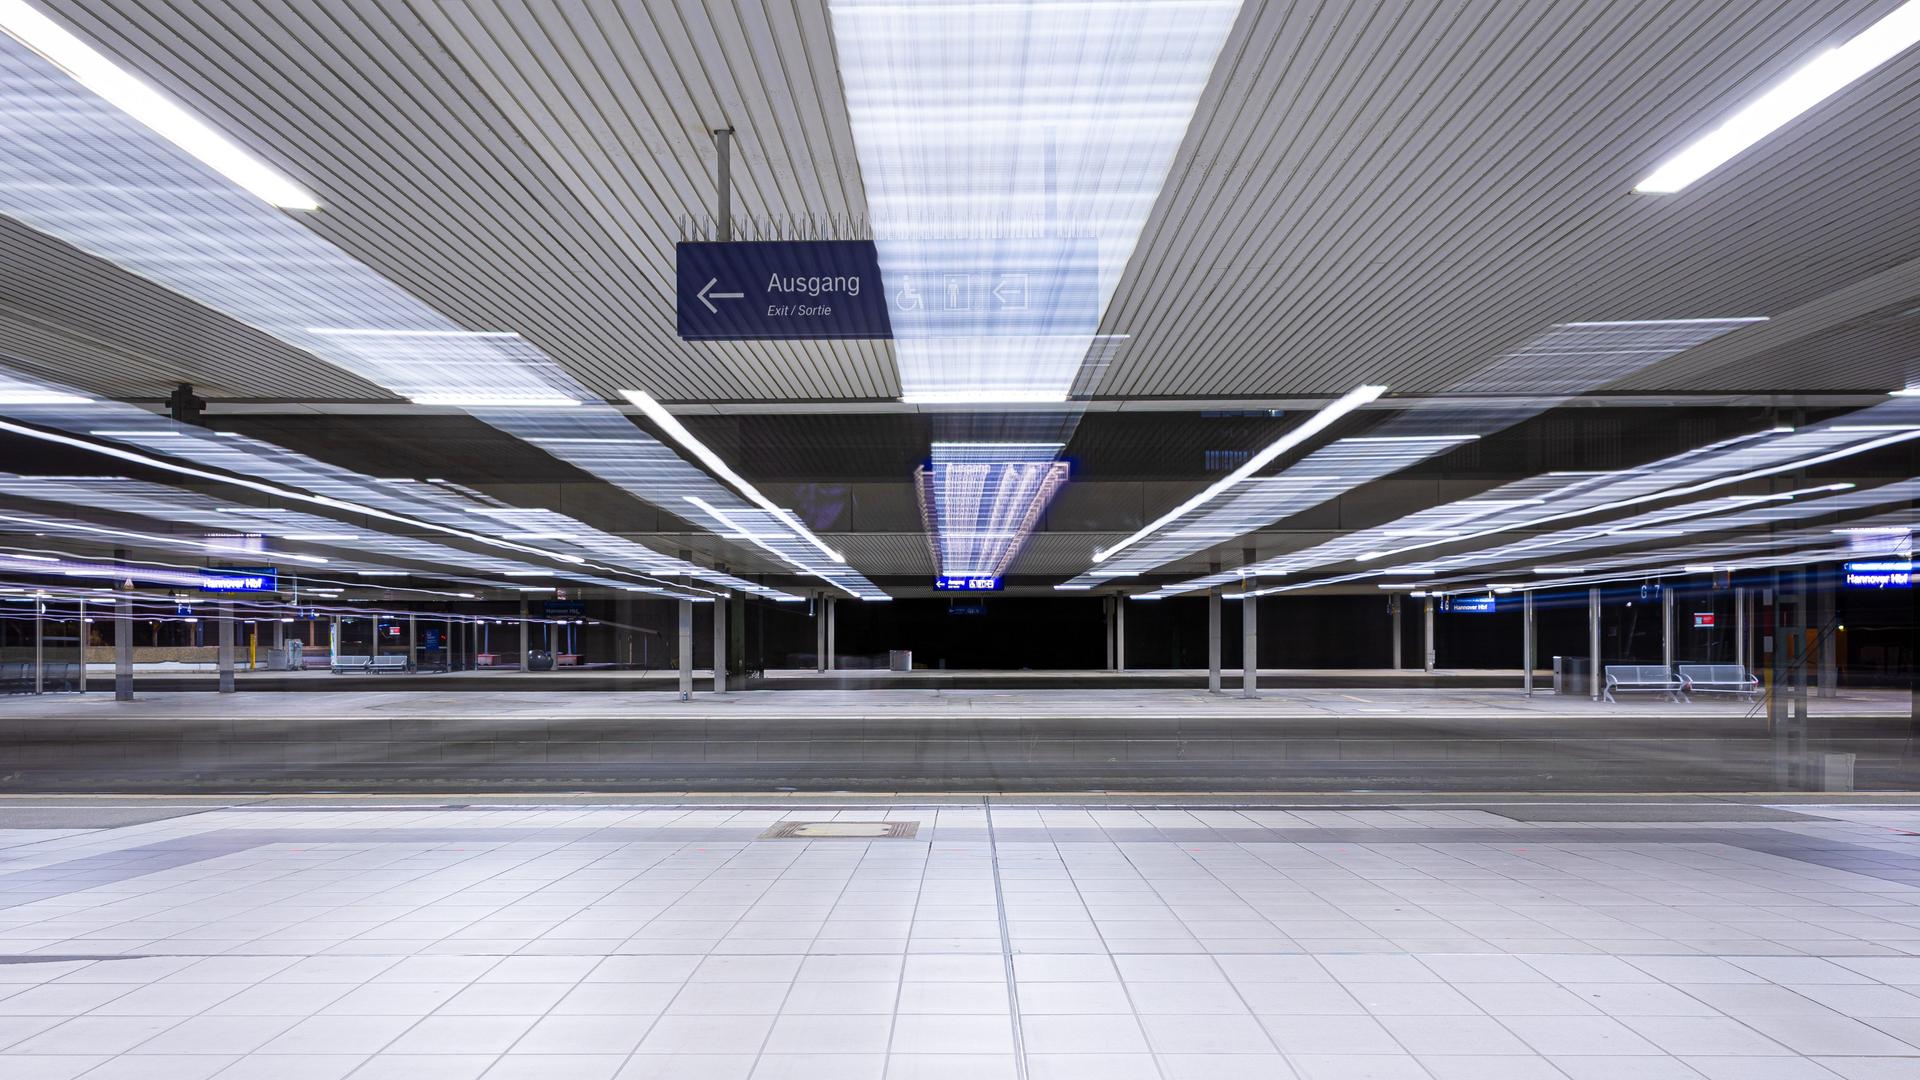 Menschenleer ist ein Bahnsteig im Hauptbahnhof Hannover am frühen Morgen.